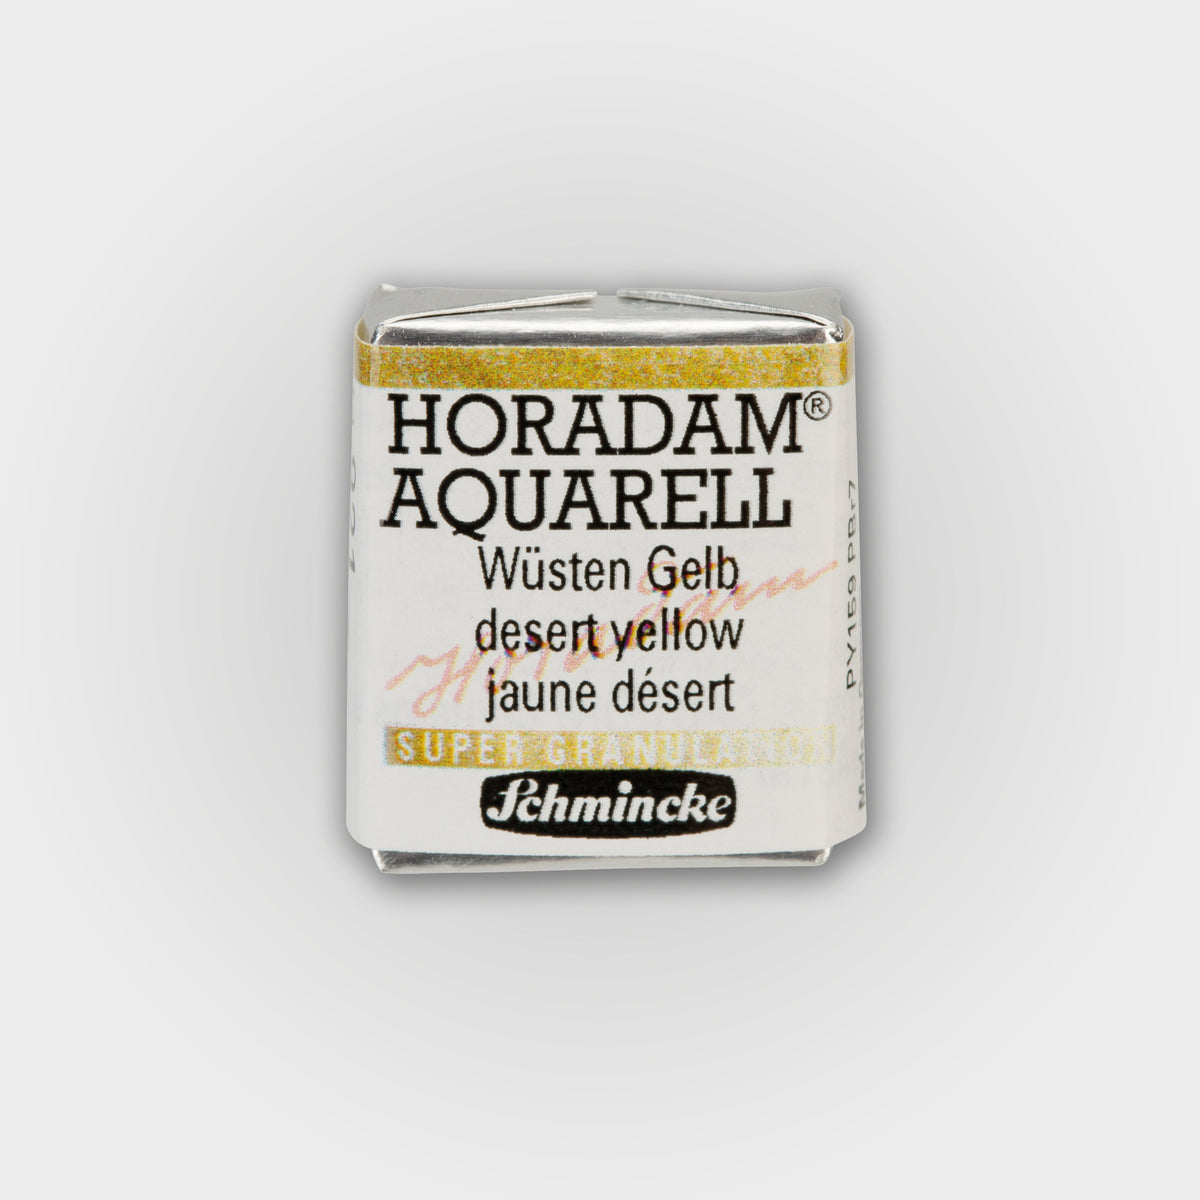 Schmincke Horadam® Supergranulierung Halbschale Wüstengelb